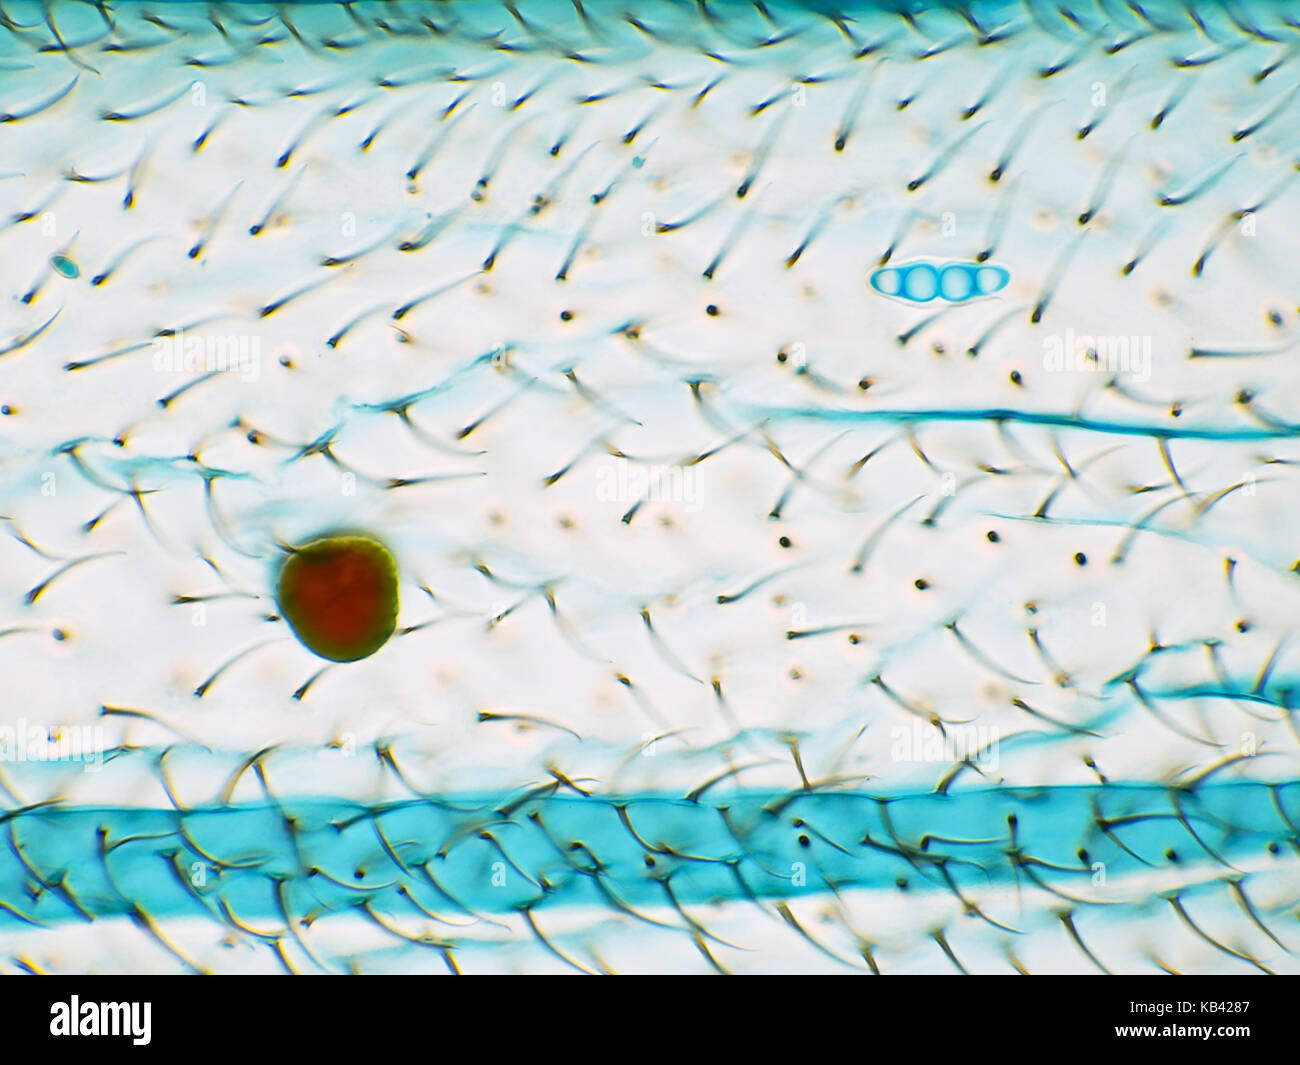 Champ lumineux lumière Microphotographie d'une aile de l'insecte de bleu de lactophénol, avec un grain de pollen de plantes et d'une spore fongique Banque D'Images